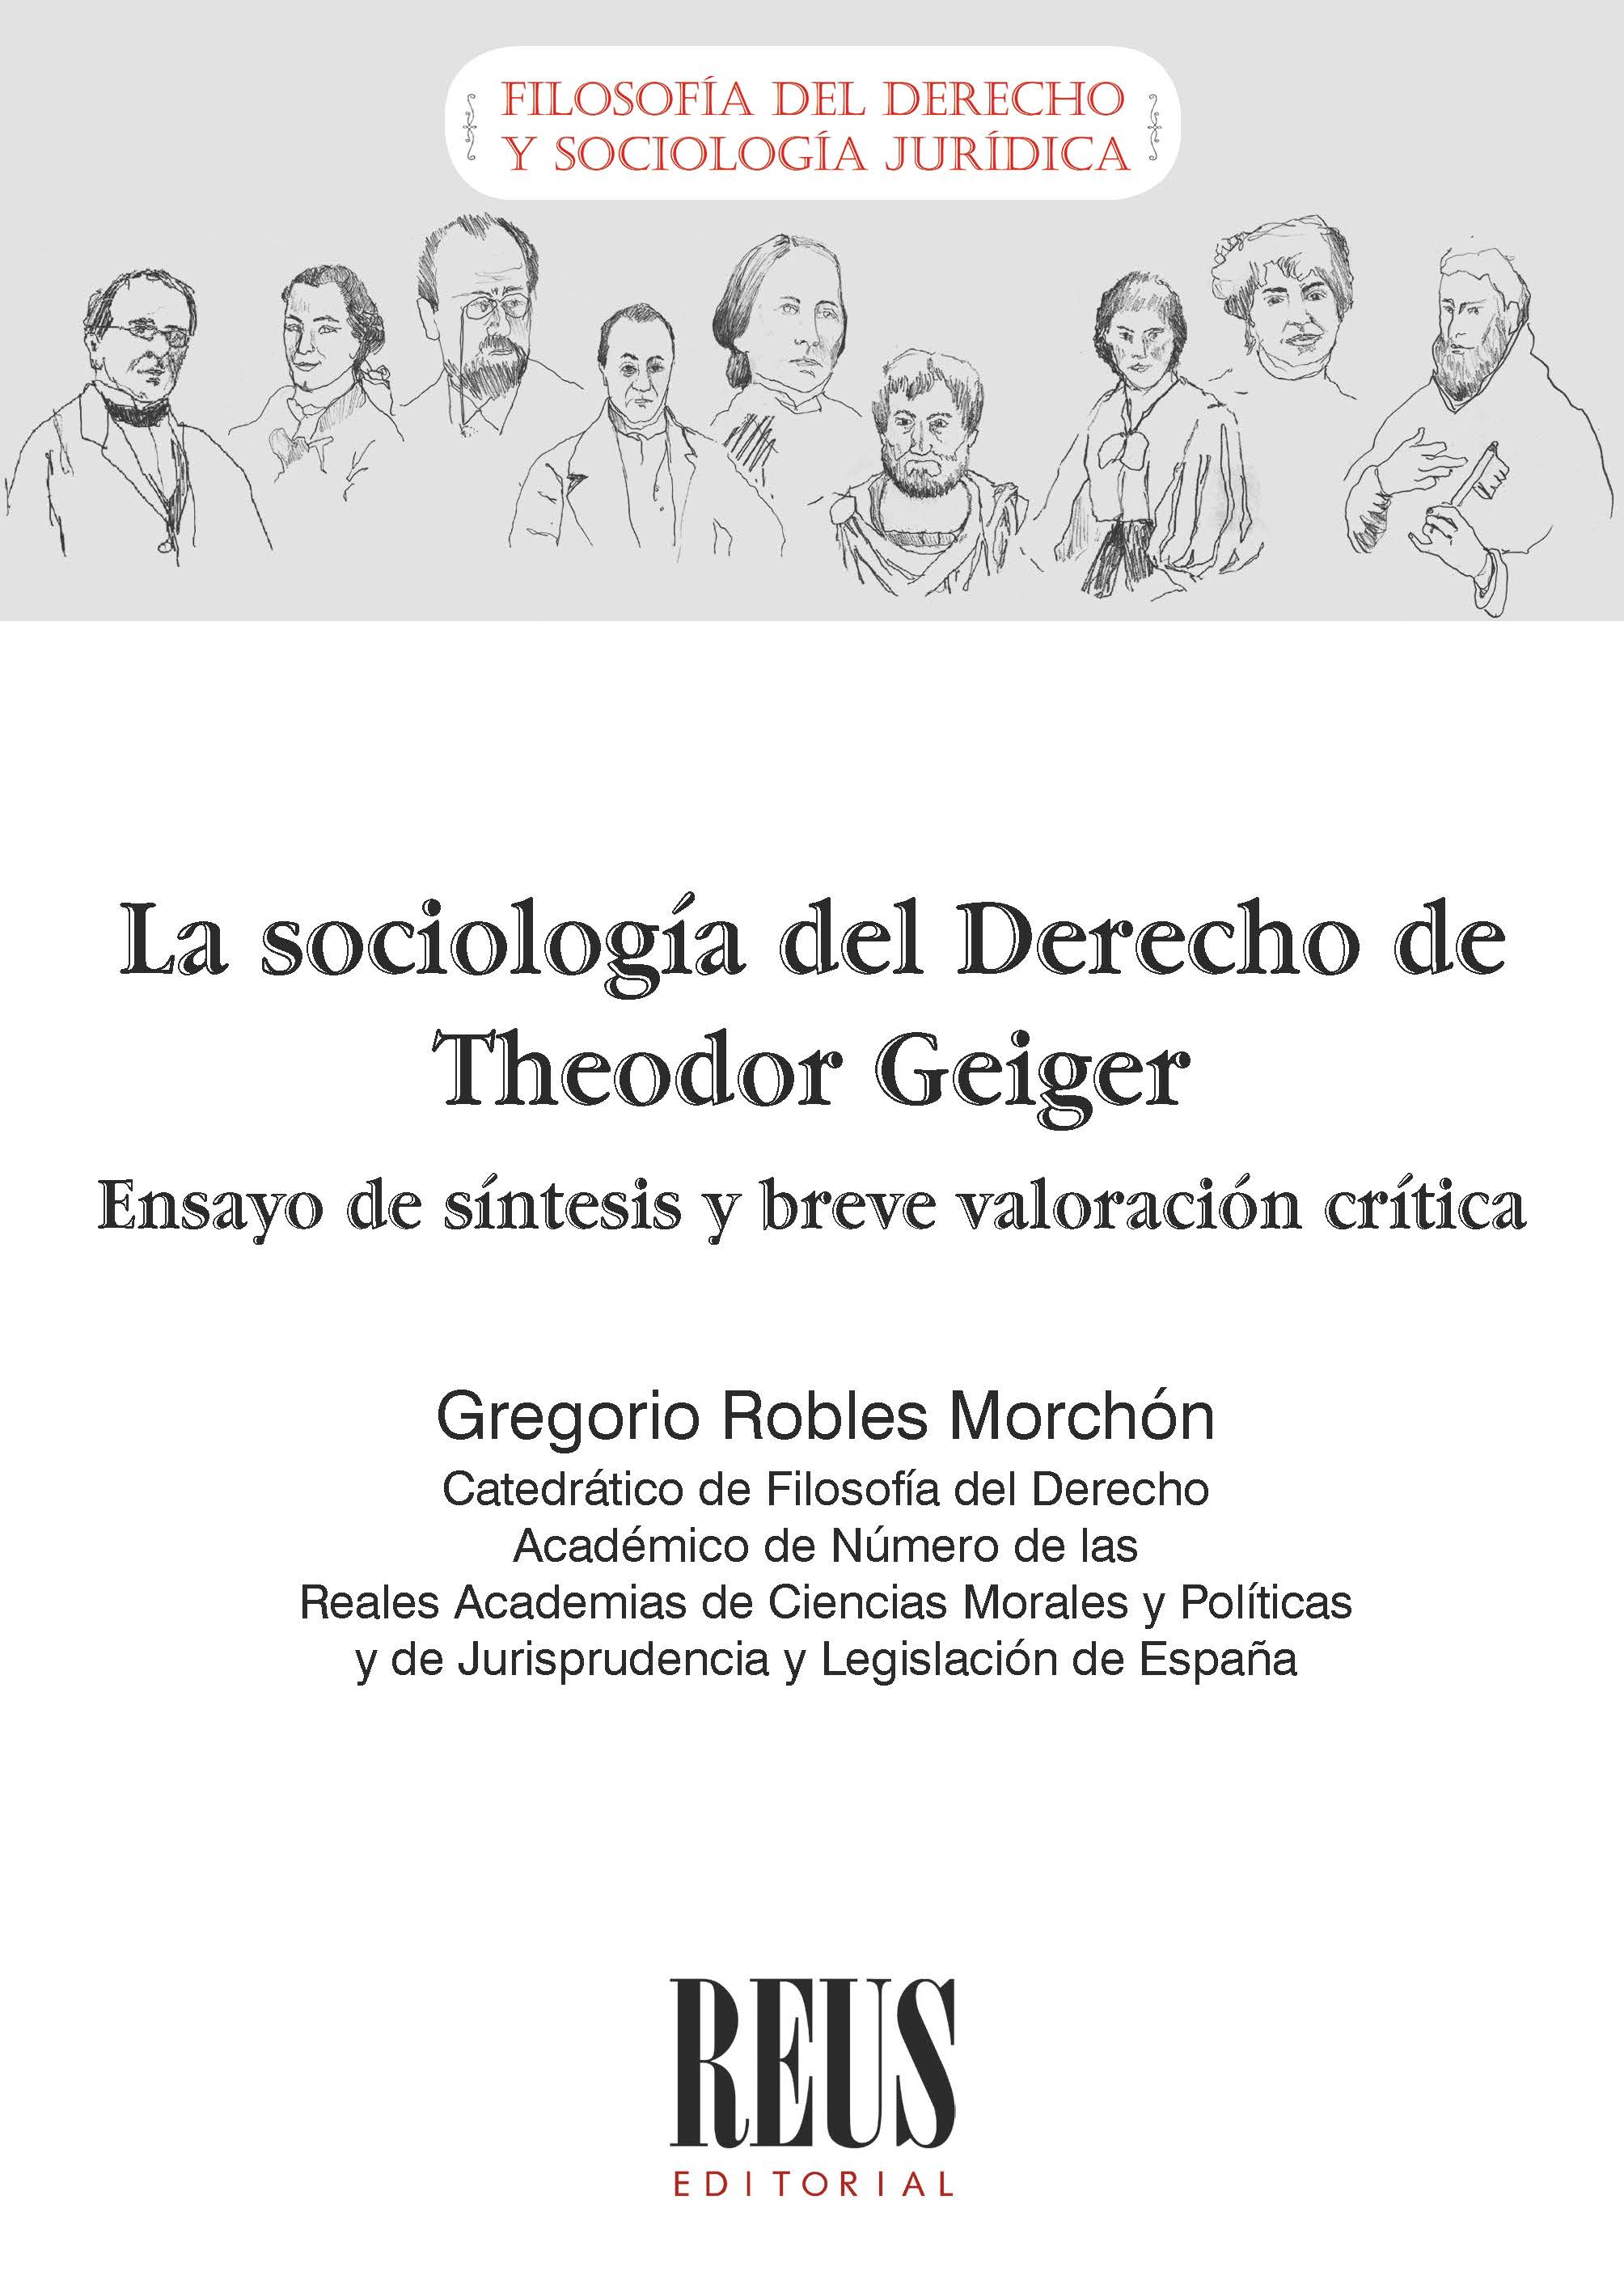 La sociología del Derecho de Theodor Geiger (ensayo de síntesis y valoración crítica). 9788429027334